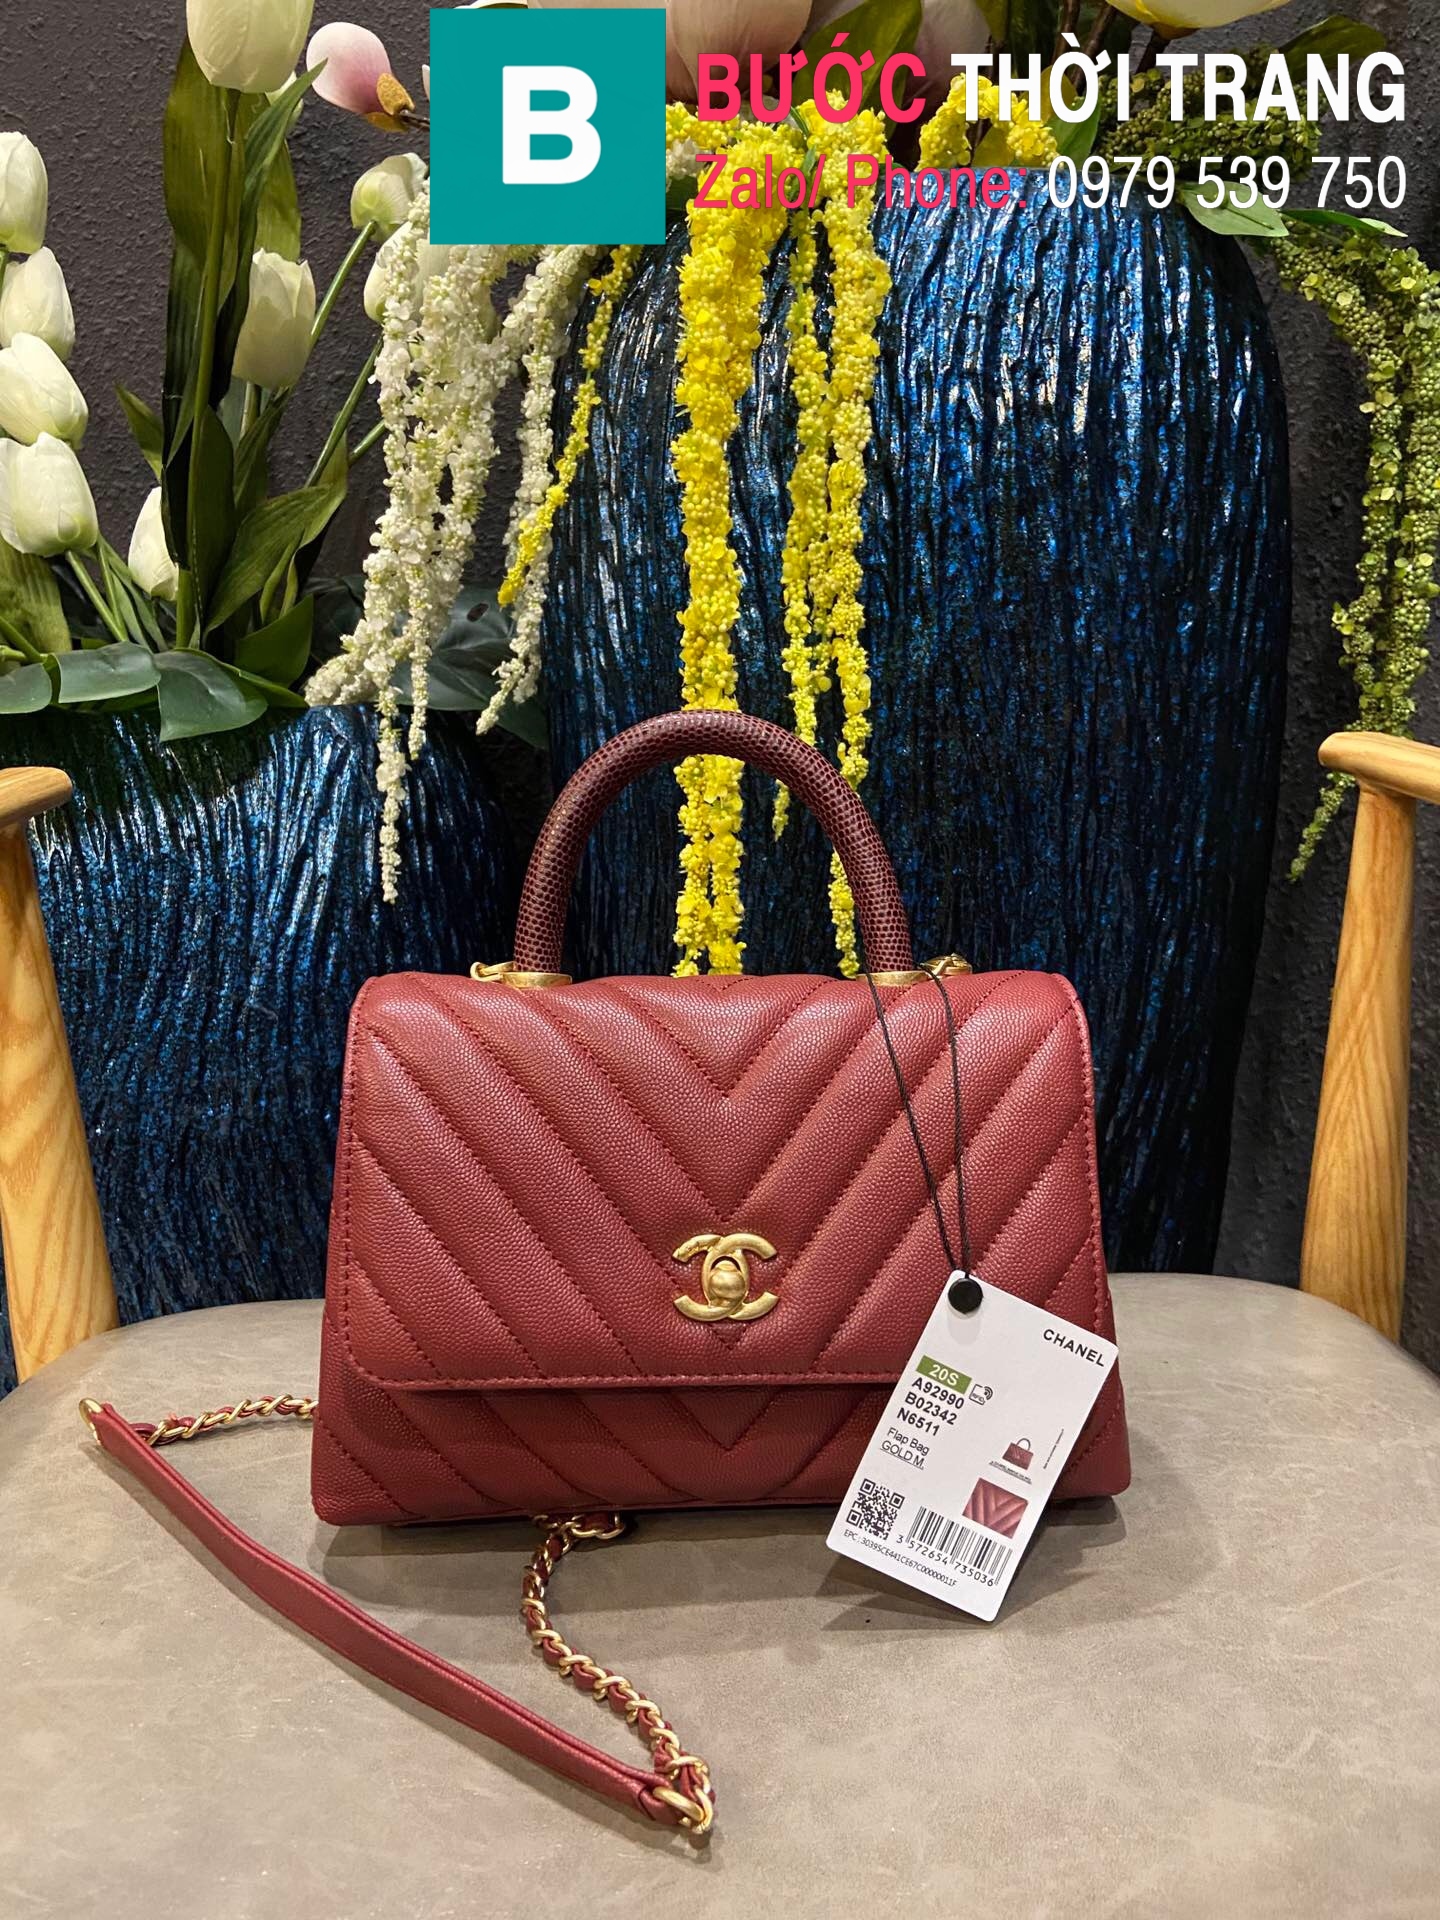 Túi xách Chanel Coco Handle Small siêu cấp da bê vân v màu đỏ đô size 24 cm  – A92990 – Túi xách cao cấp, những mẫu túi siêu cấp, like authentic cực đẹp